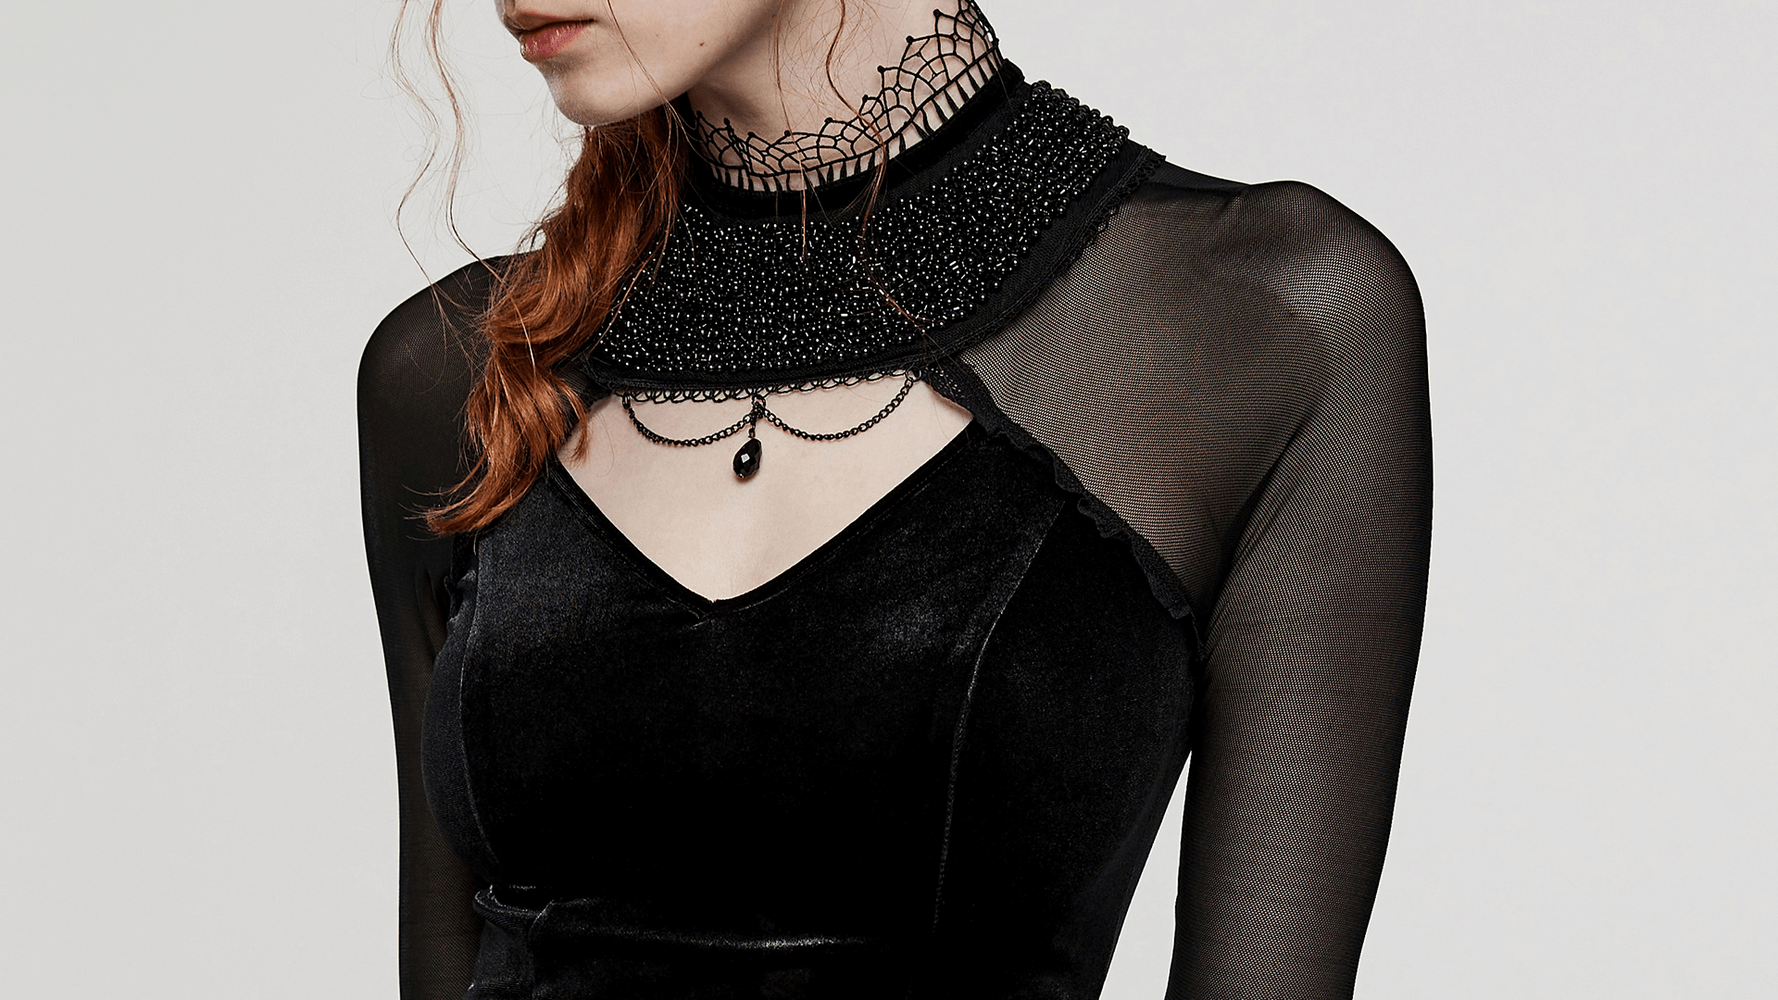 Elegant Gothic Velvet Dress with Mesh Sleeves - HARD'N'HEAVY